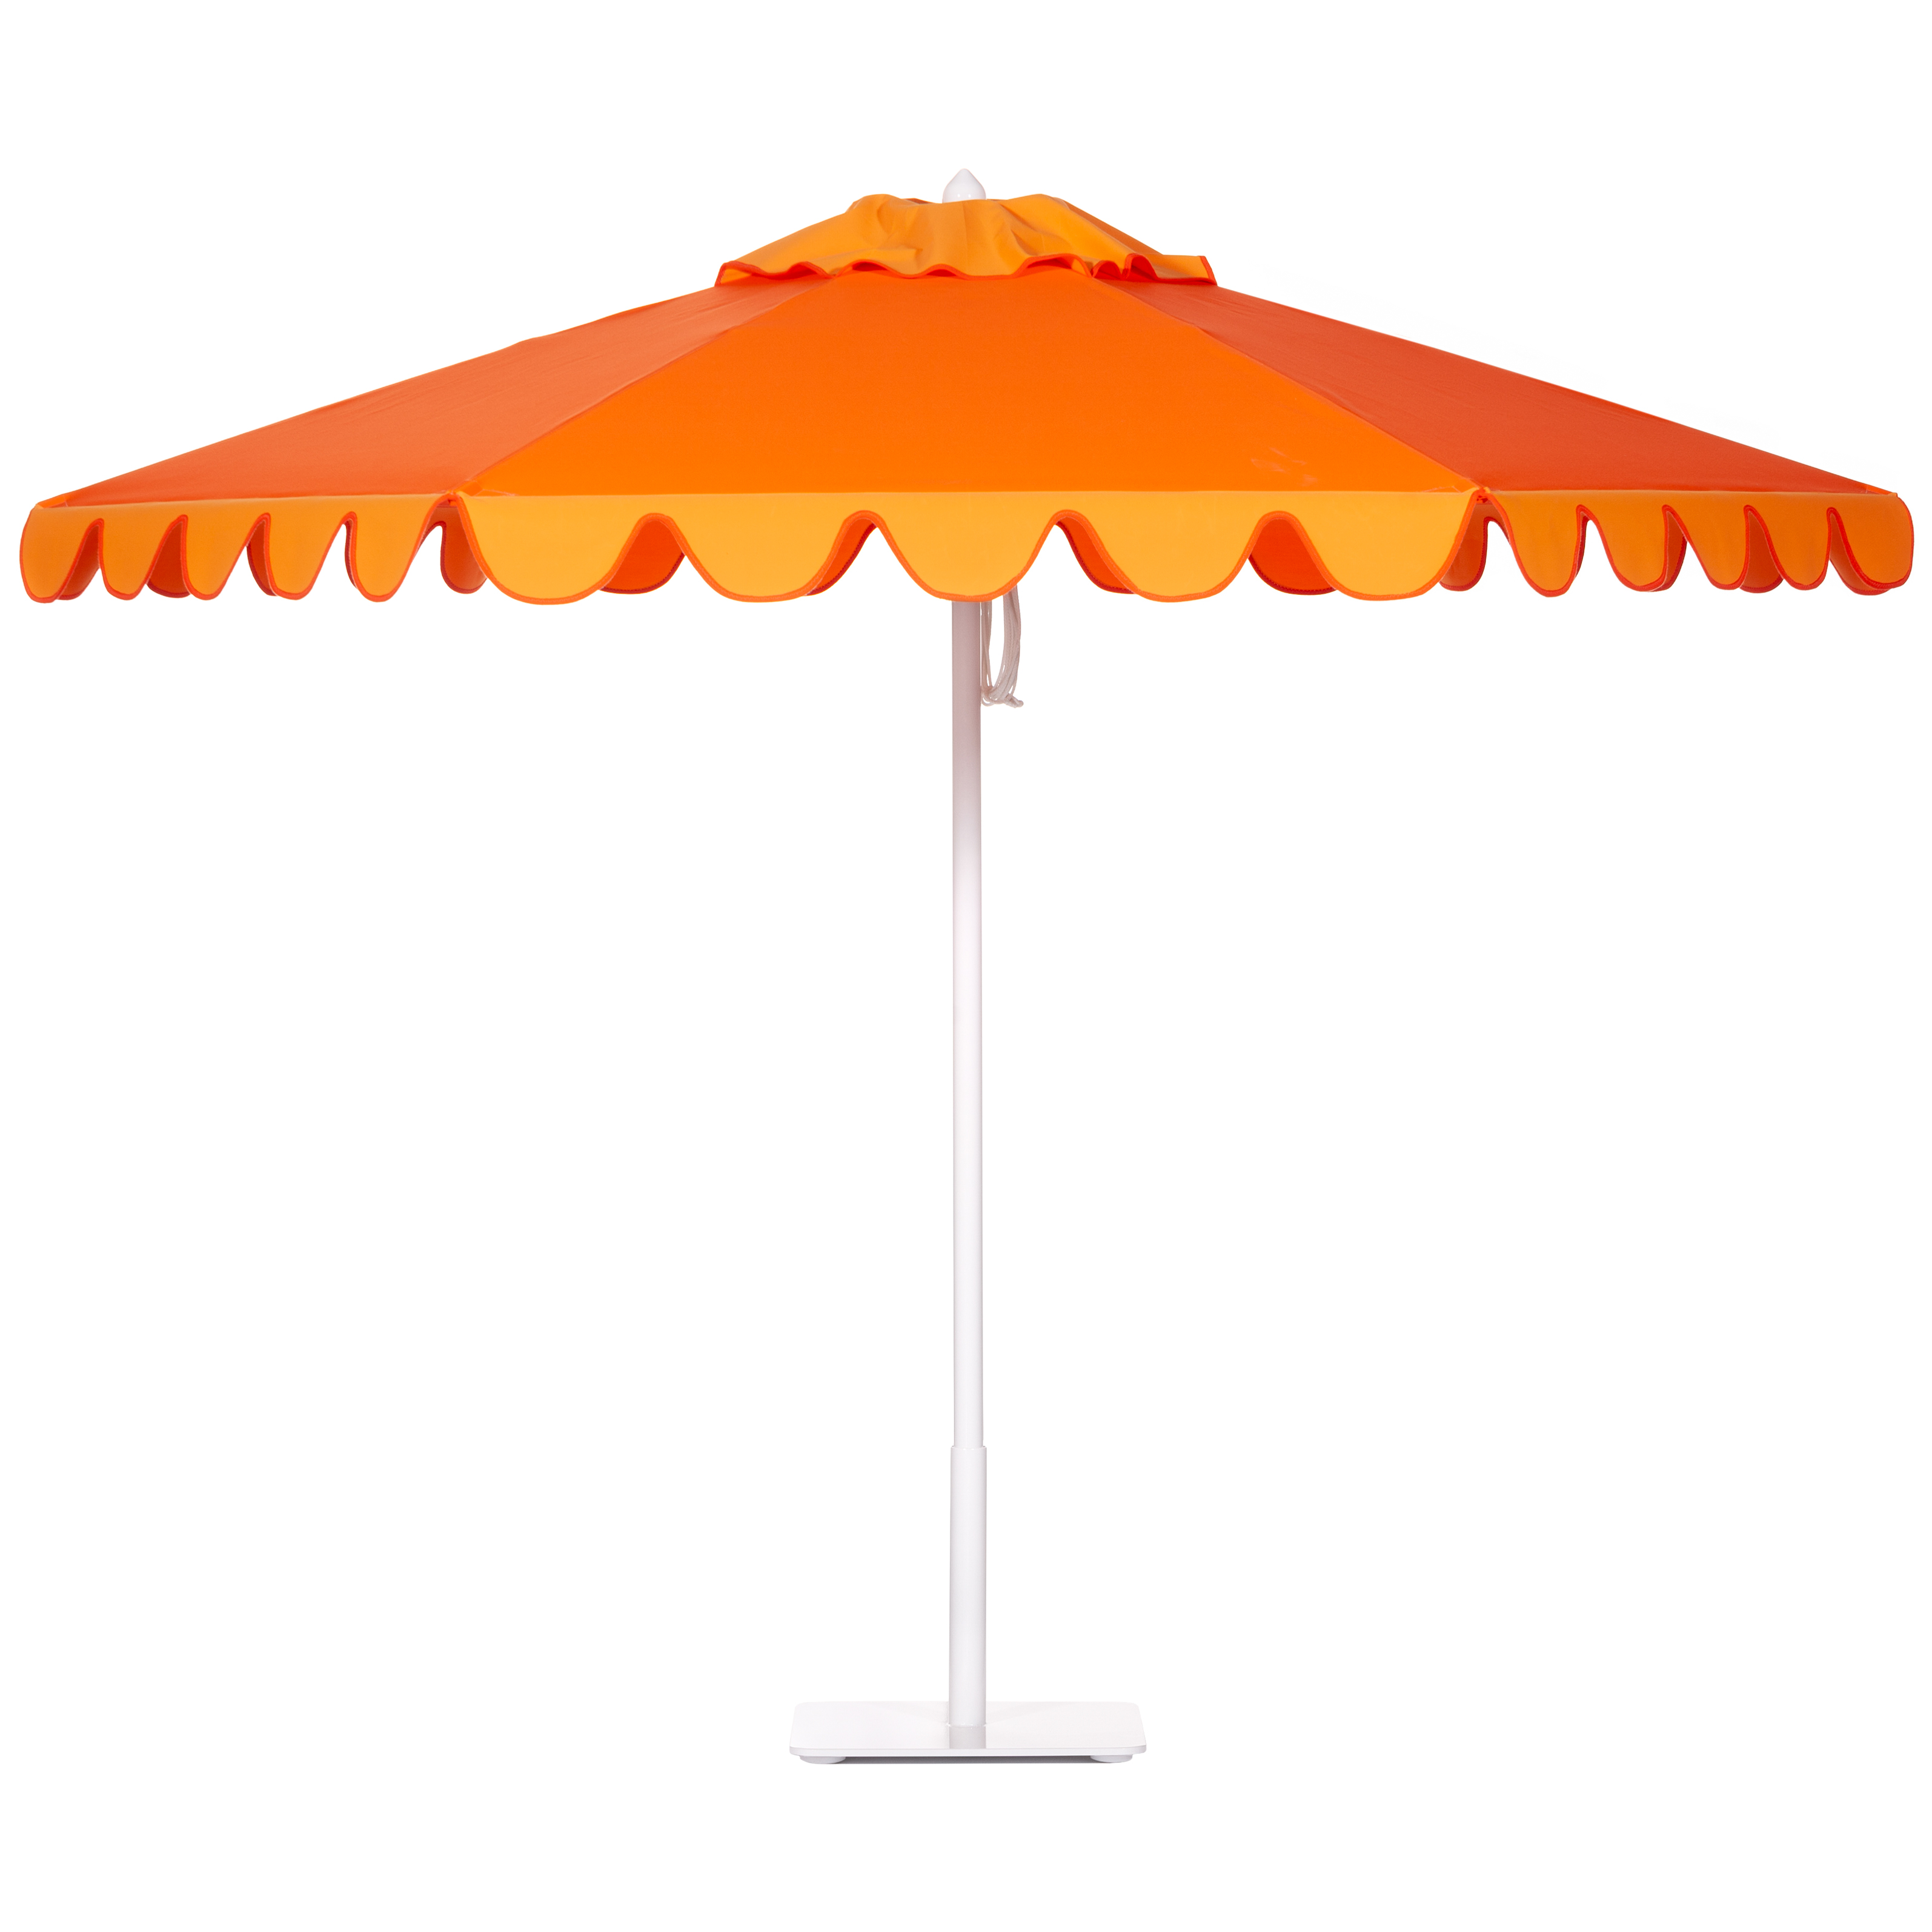 Tango Orange / Mandarin Orange Umbrella Image